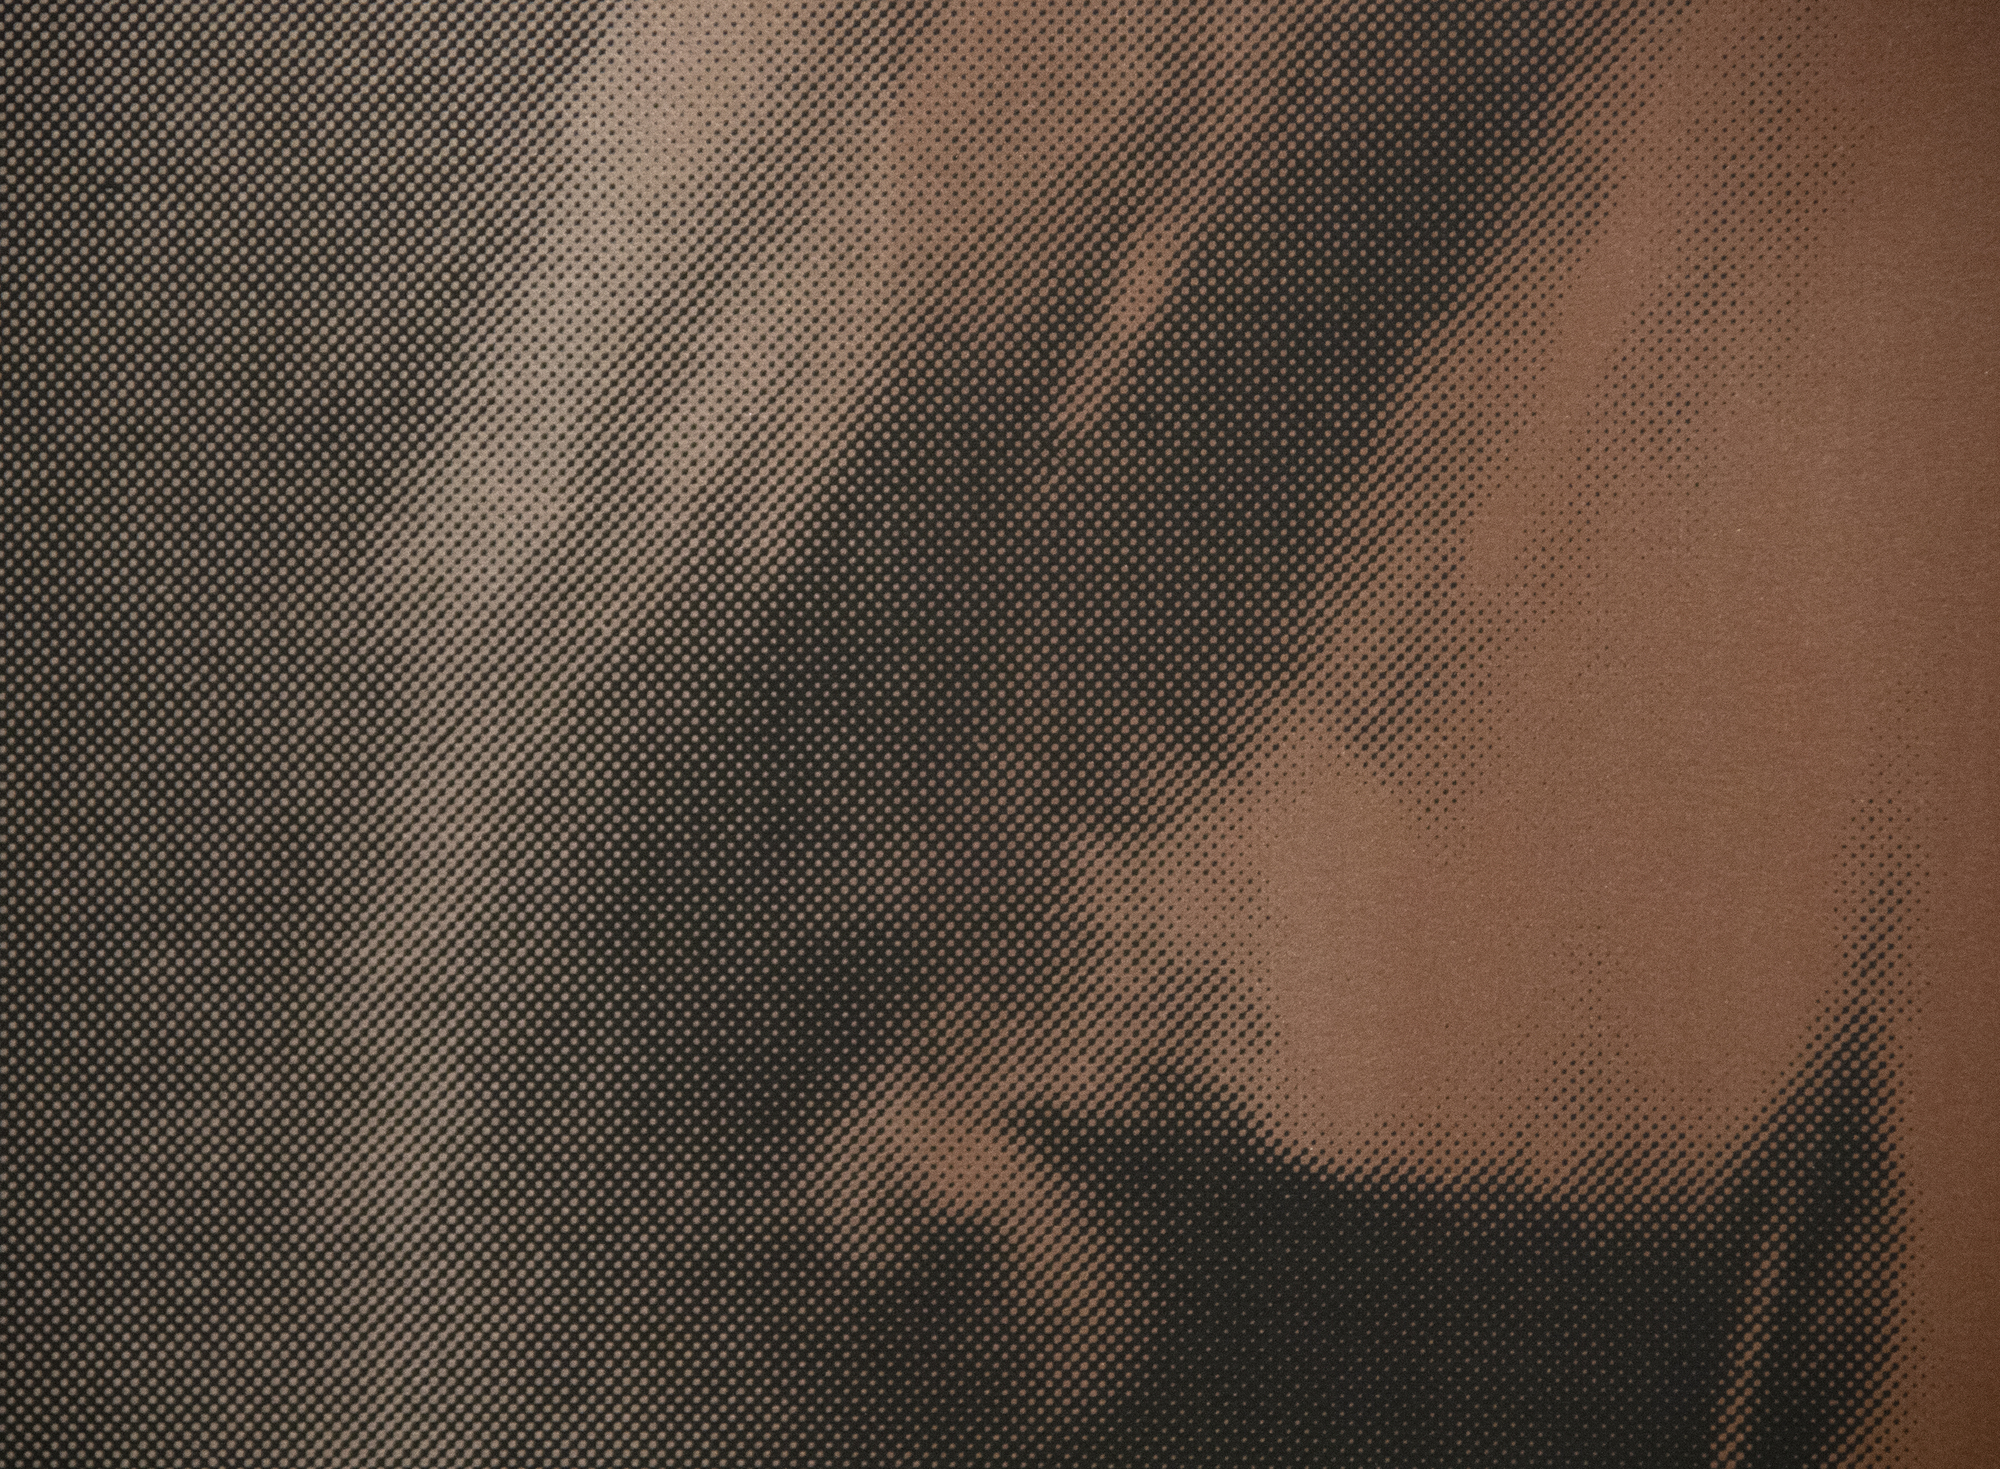 安迪-沃霍尔--《影子》（选自《神话》）--纸上印有钻石粉的彩色丝网版画--37 1/2 x 37 1/2英寸。